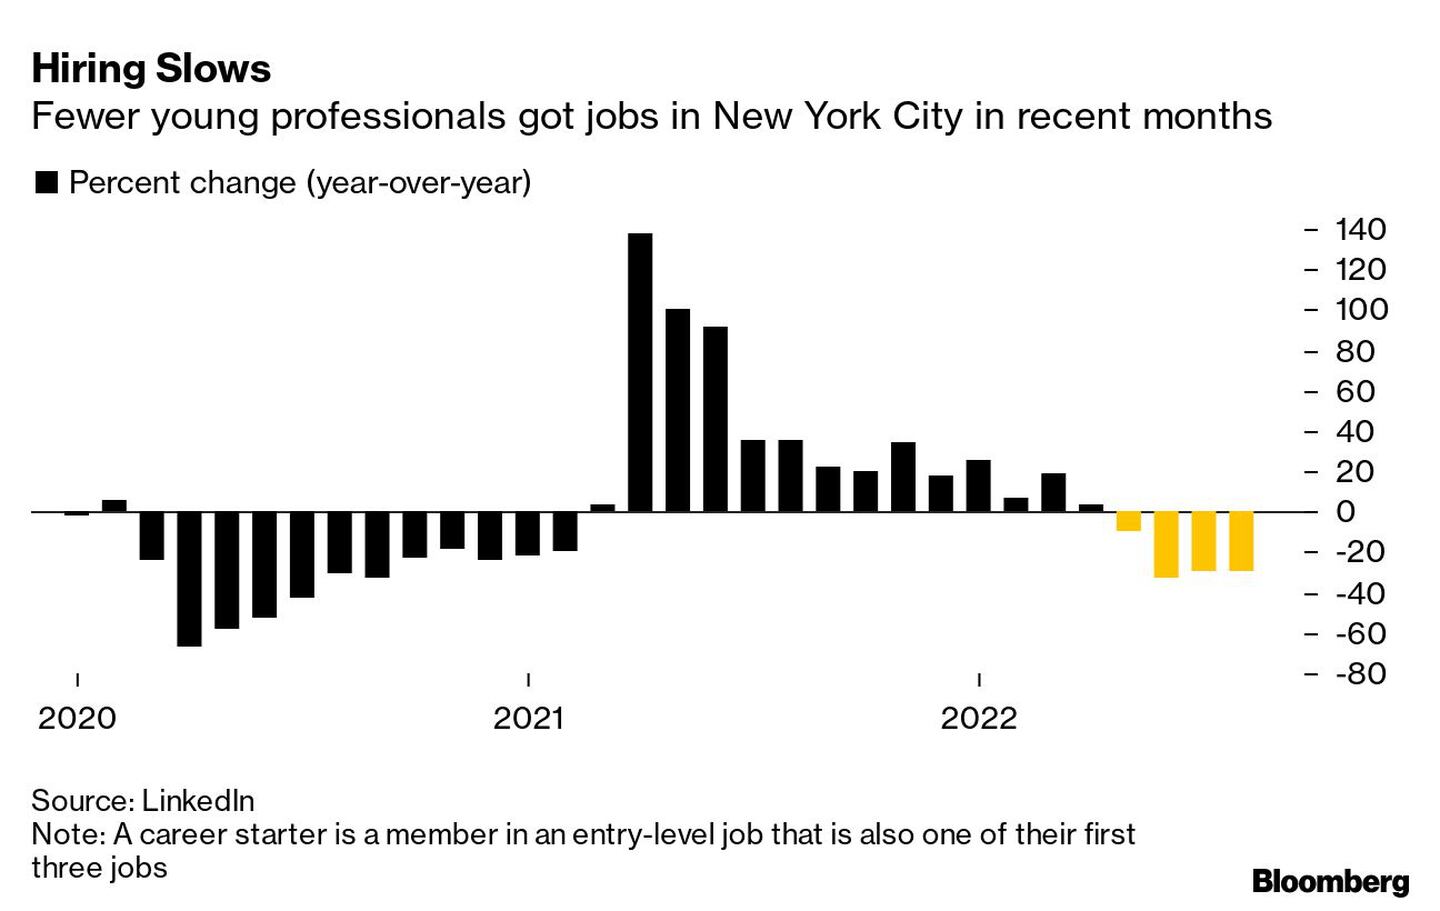 En los últimos meses, menos profesionales jóvenes consiguieron trabajo en Nueva Yorkdfd